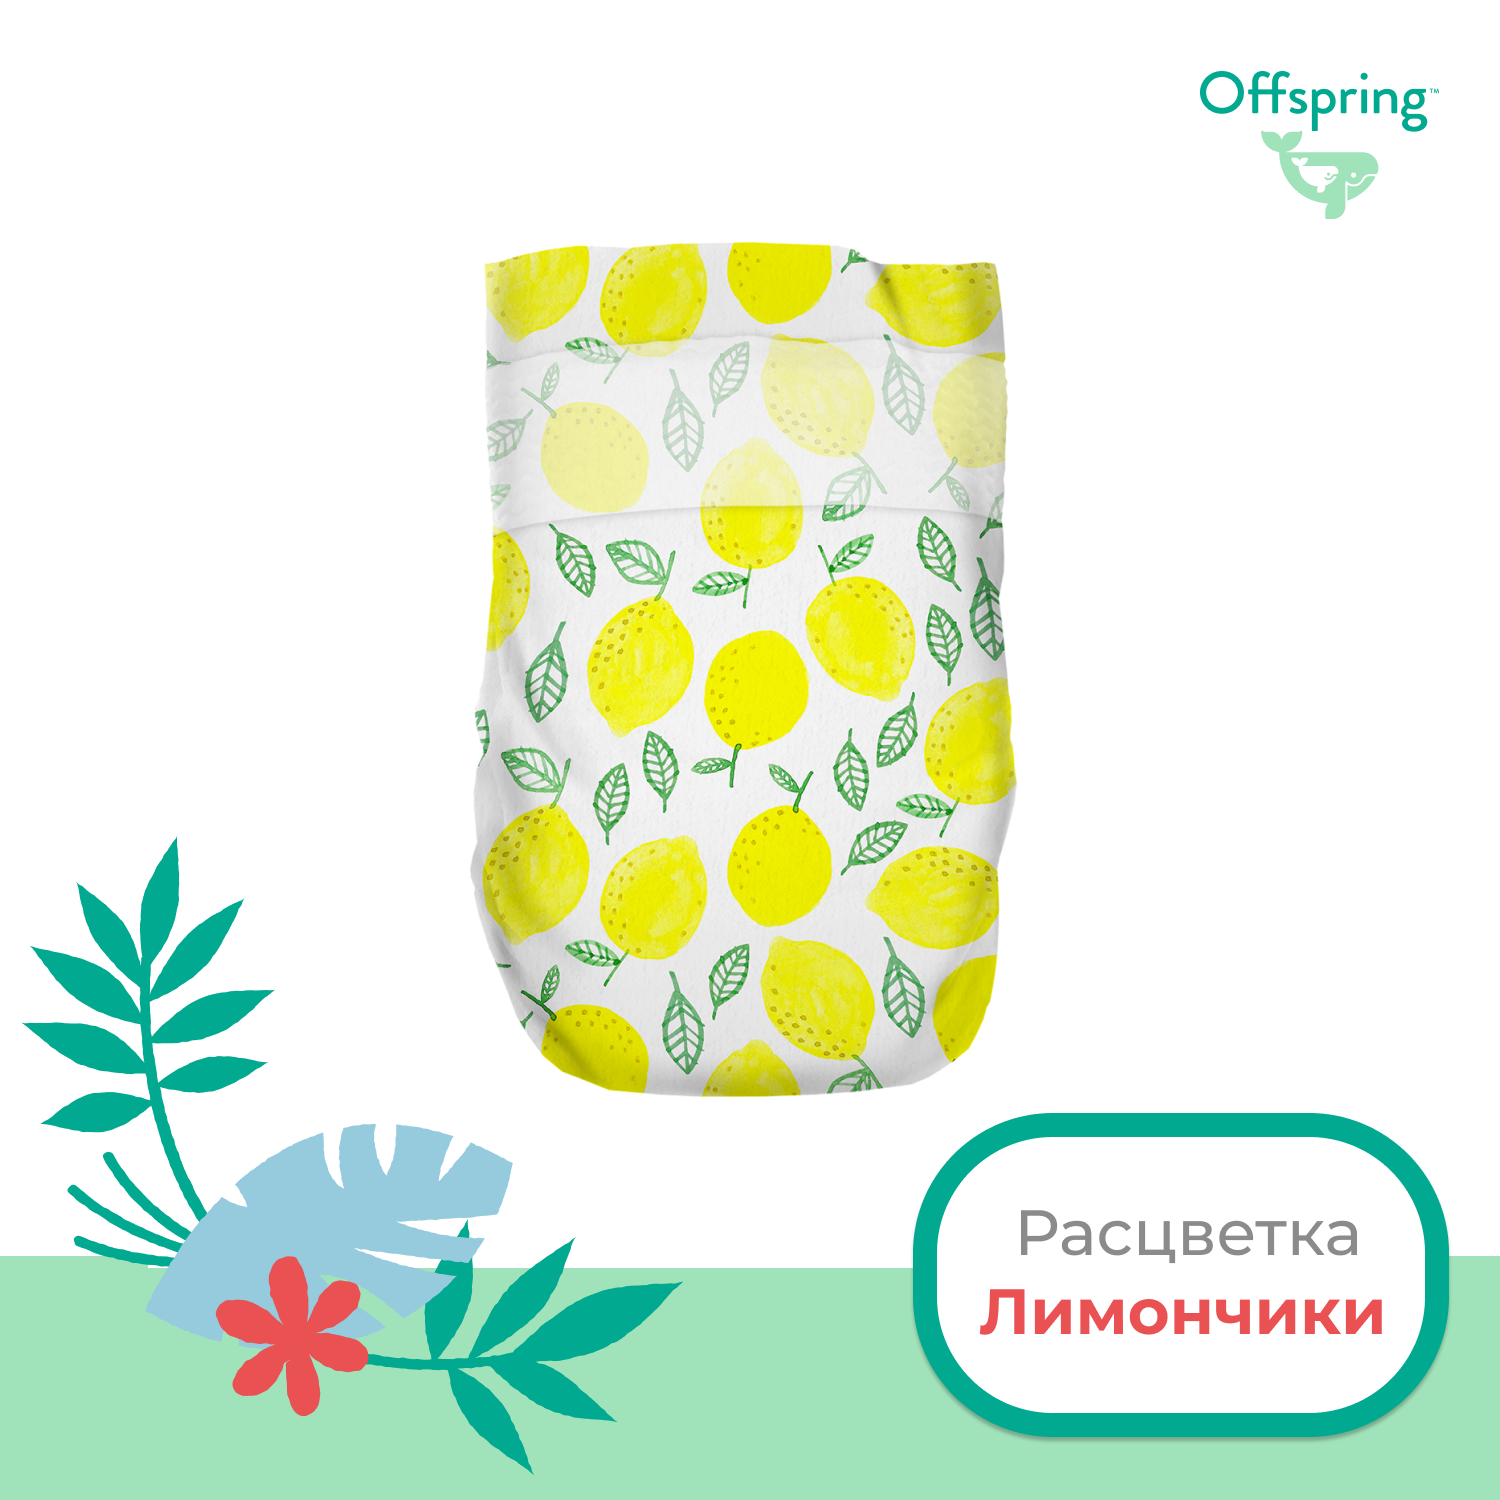 Подгузники Offspring L 9-13 кг 36 шт расцветка Лимоны - фото 2